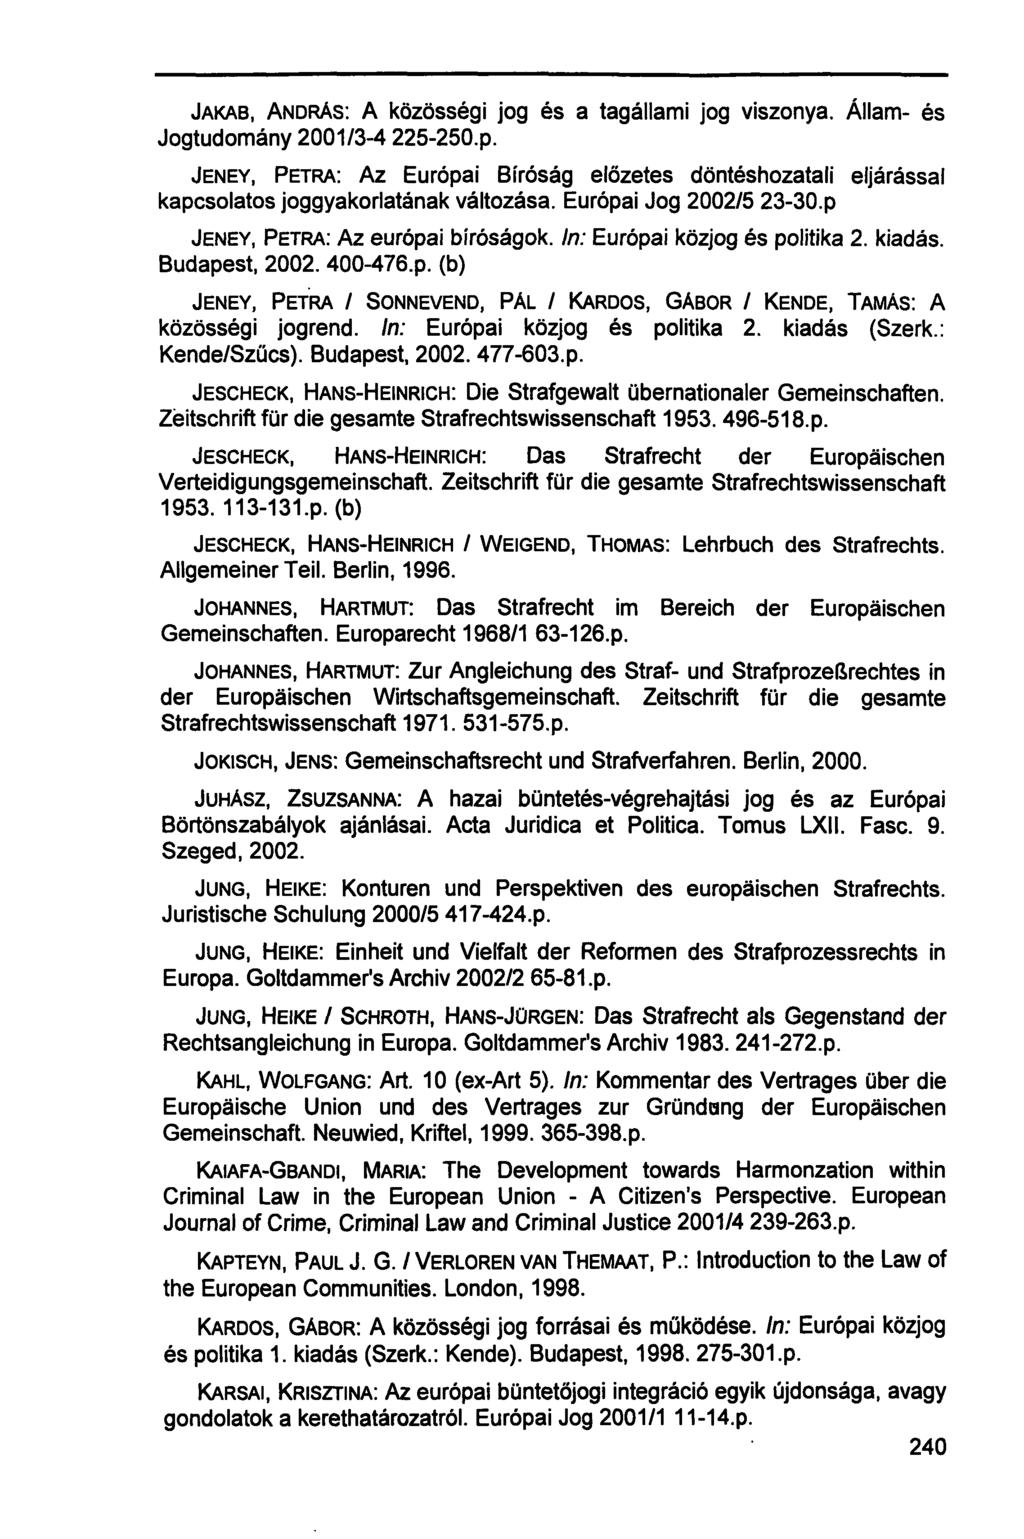 JAKAB, ANDRÁS: A közösségi jog és a tagállami jog viszonya. Állam- és Jogtudomány 2001/3-4 225-250.p.